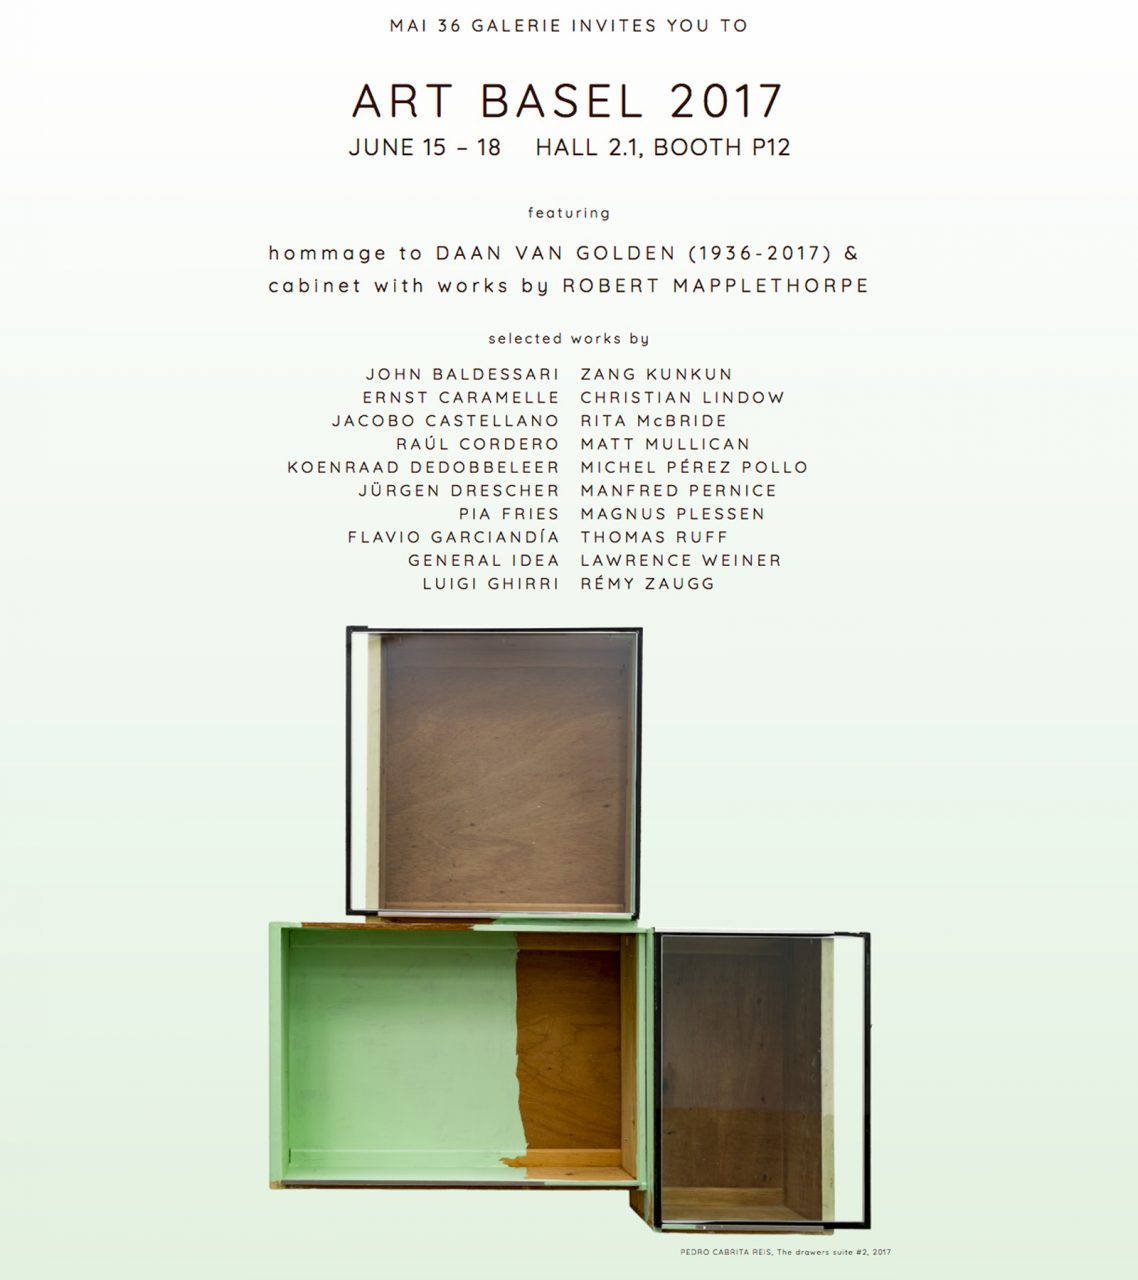 ART BASEL 2017